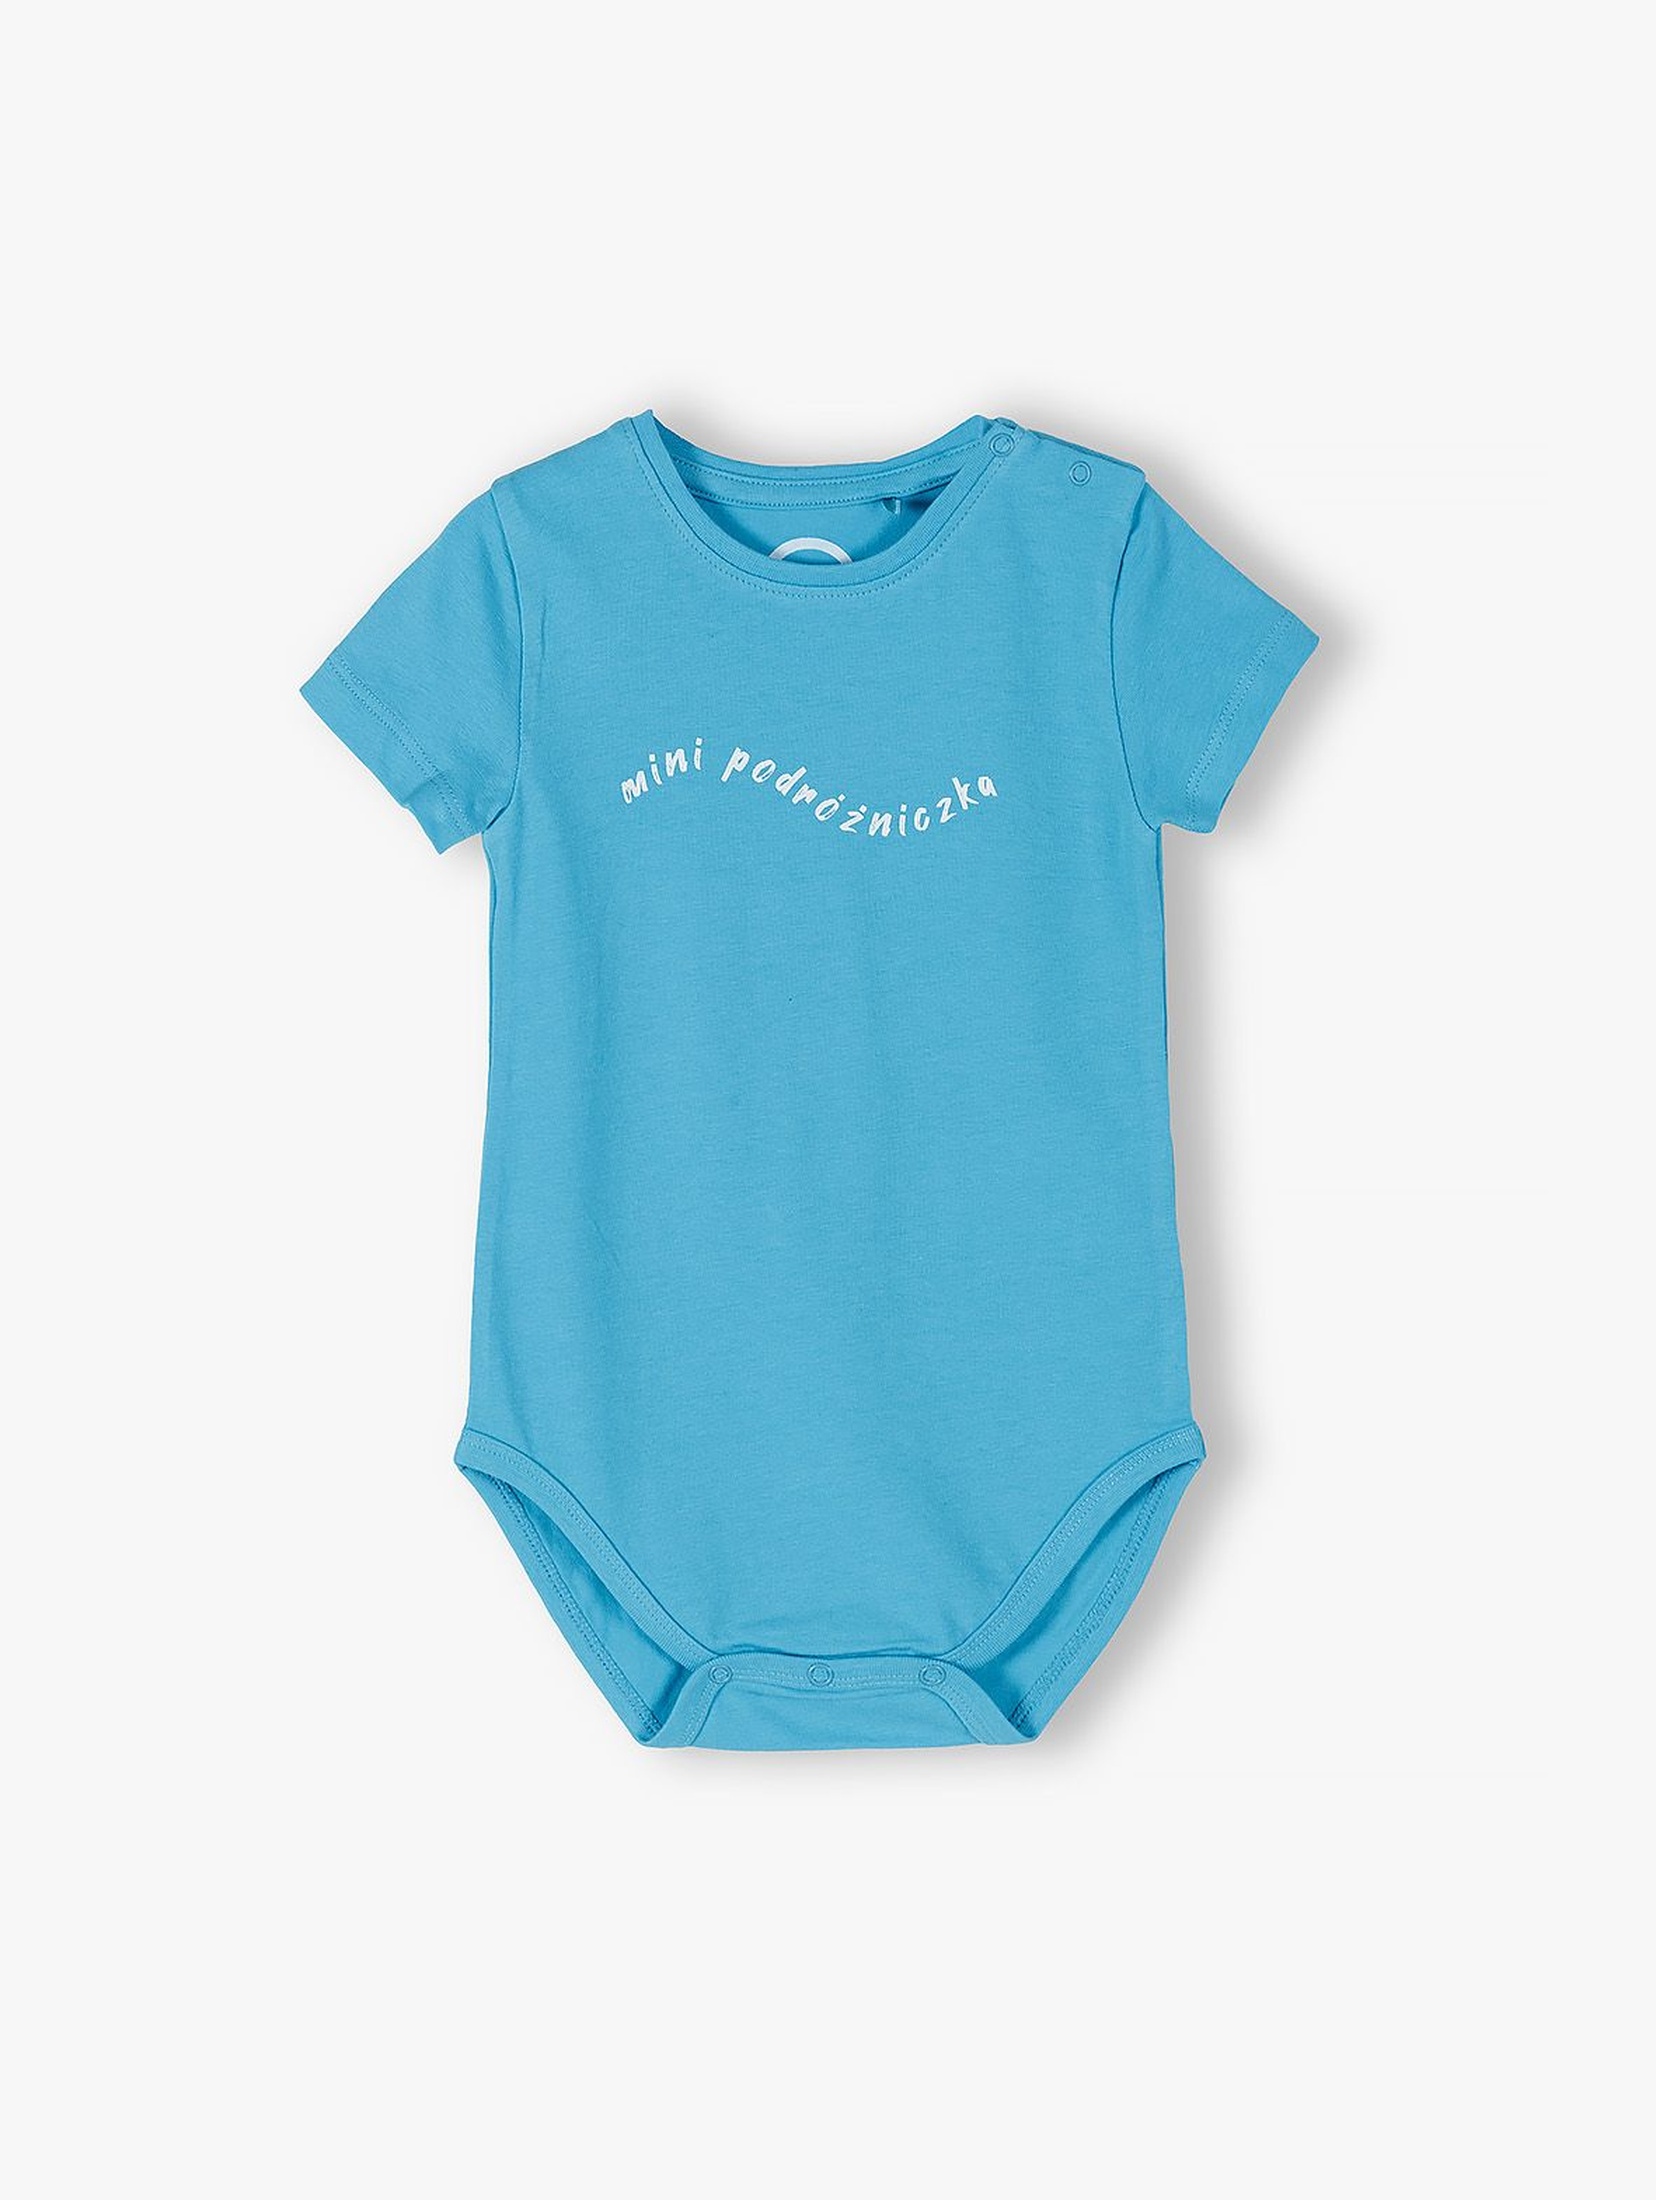 Niebieskie body niemowlęce z napisem Mini Podróżniczka